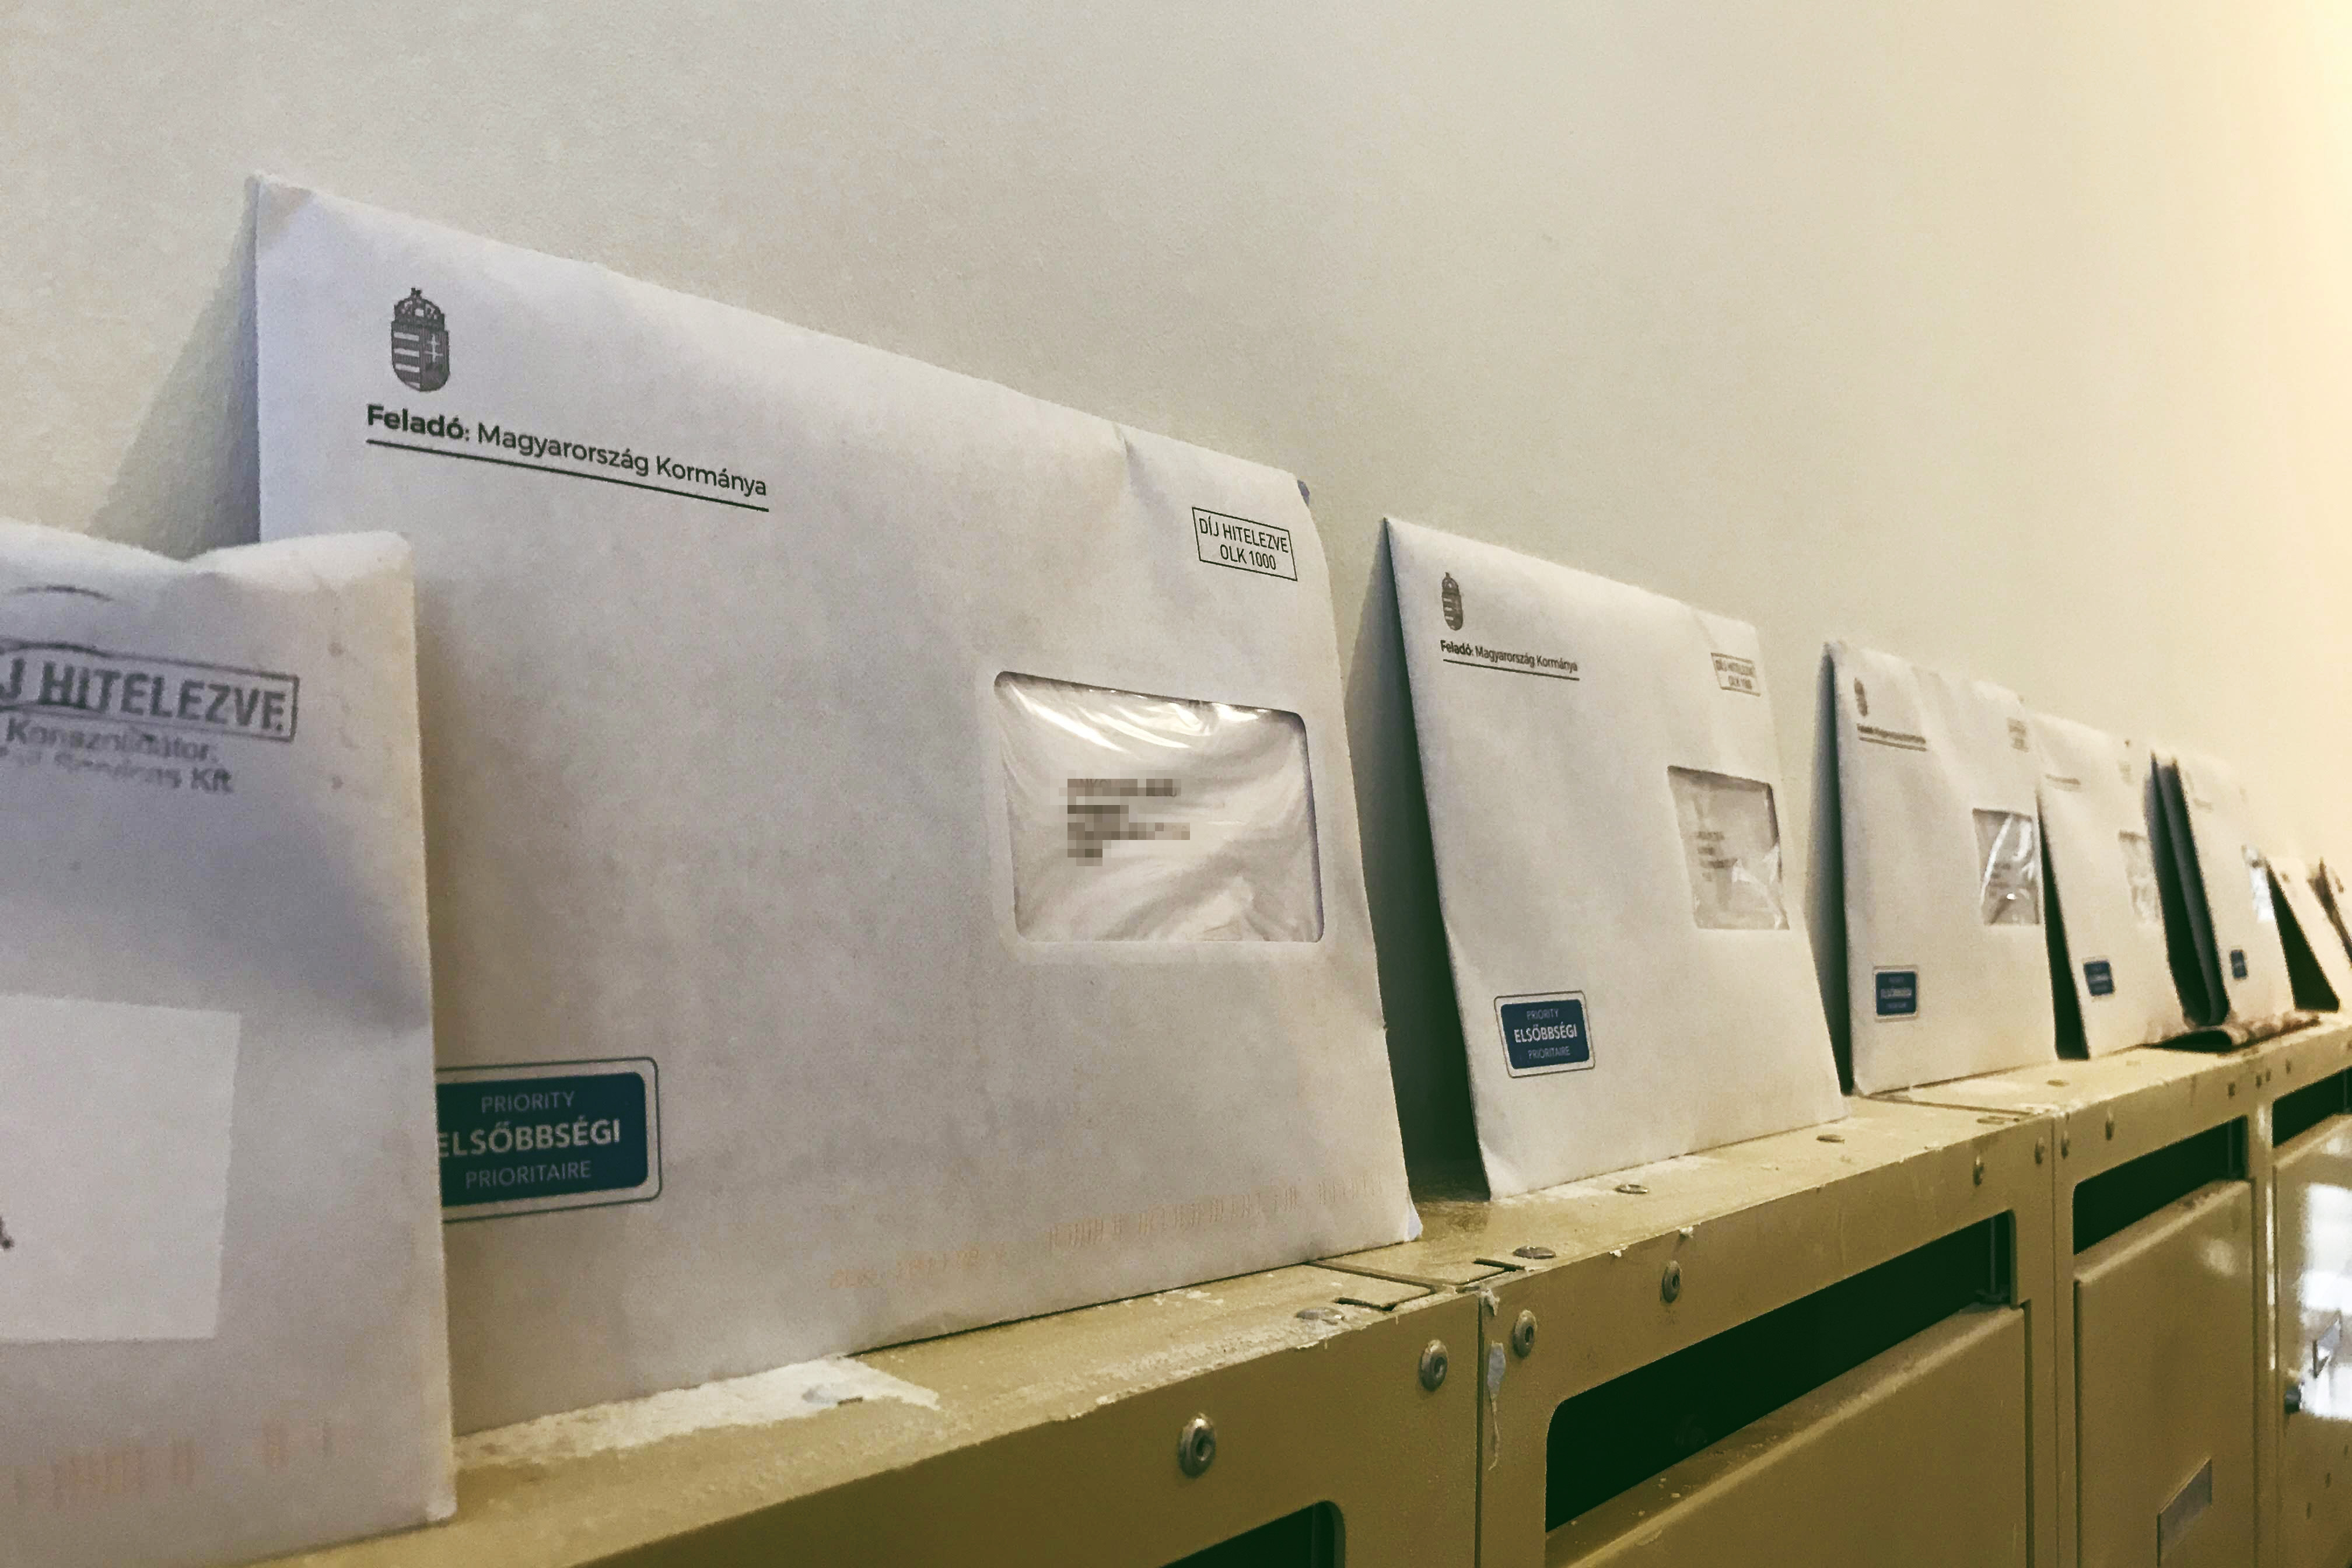 Szeptember 1-től elvben már nyomon követhetjük, hogy hol jár a postára adott küldemény